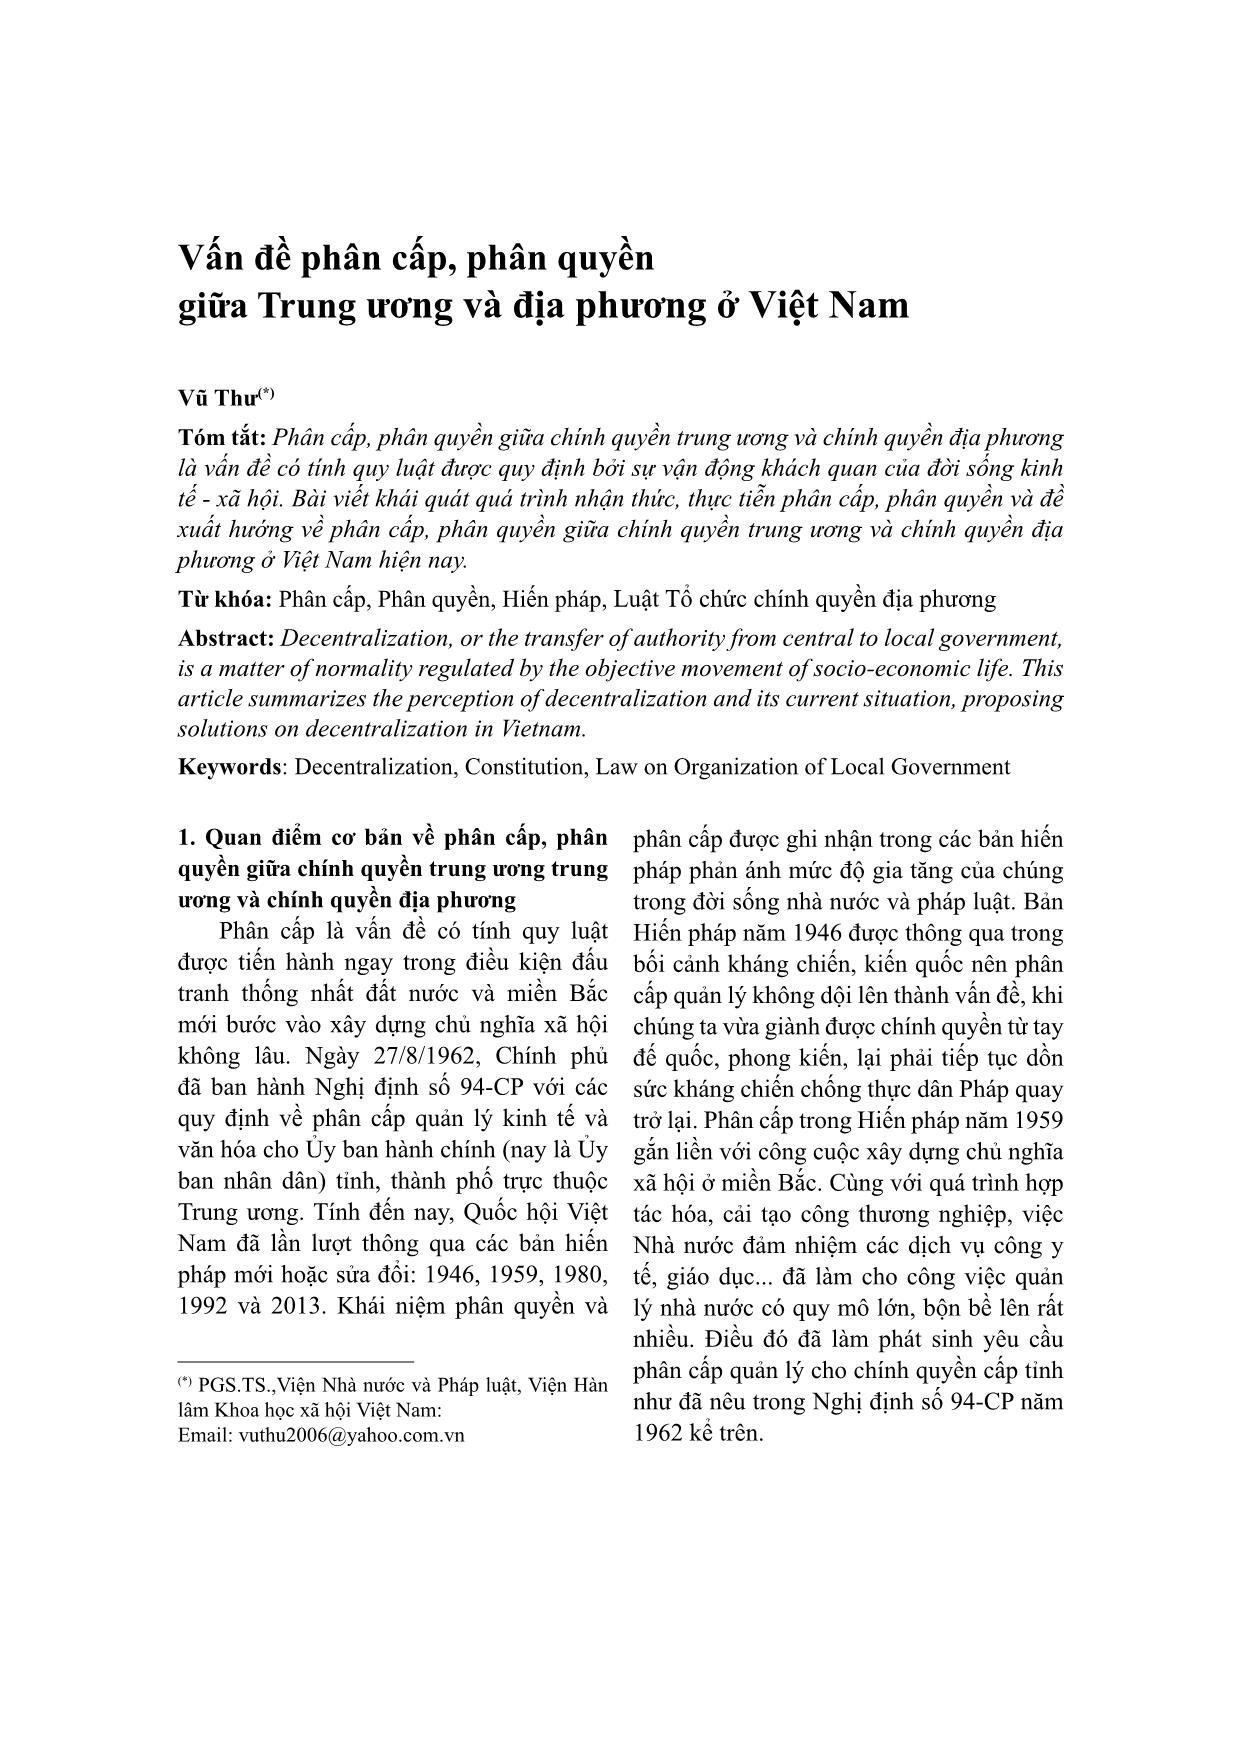 Vấn đề phân cấp, phân quyền giữa Trung ương và địa phương ở Việt Nam trang 1